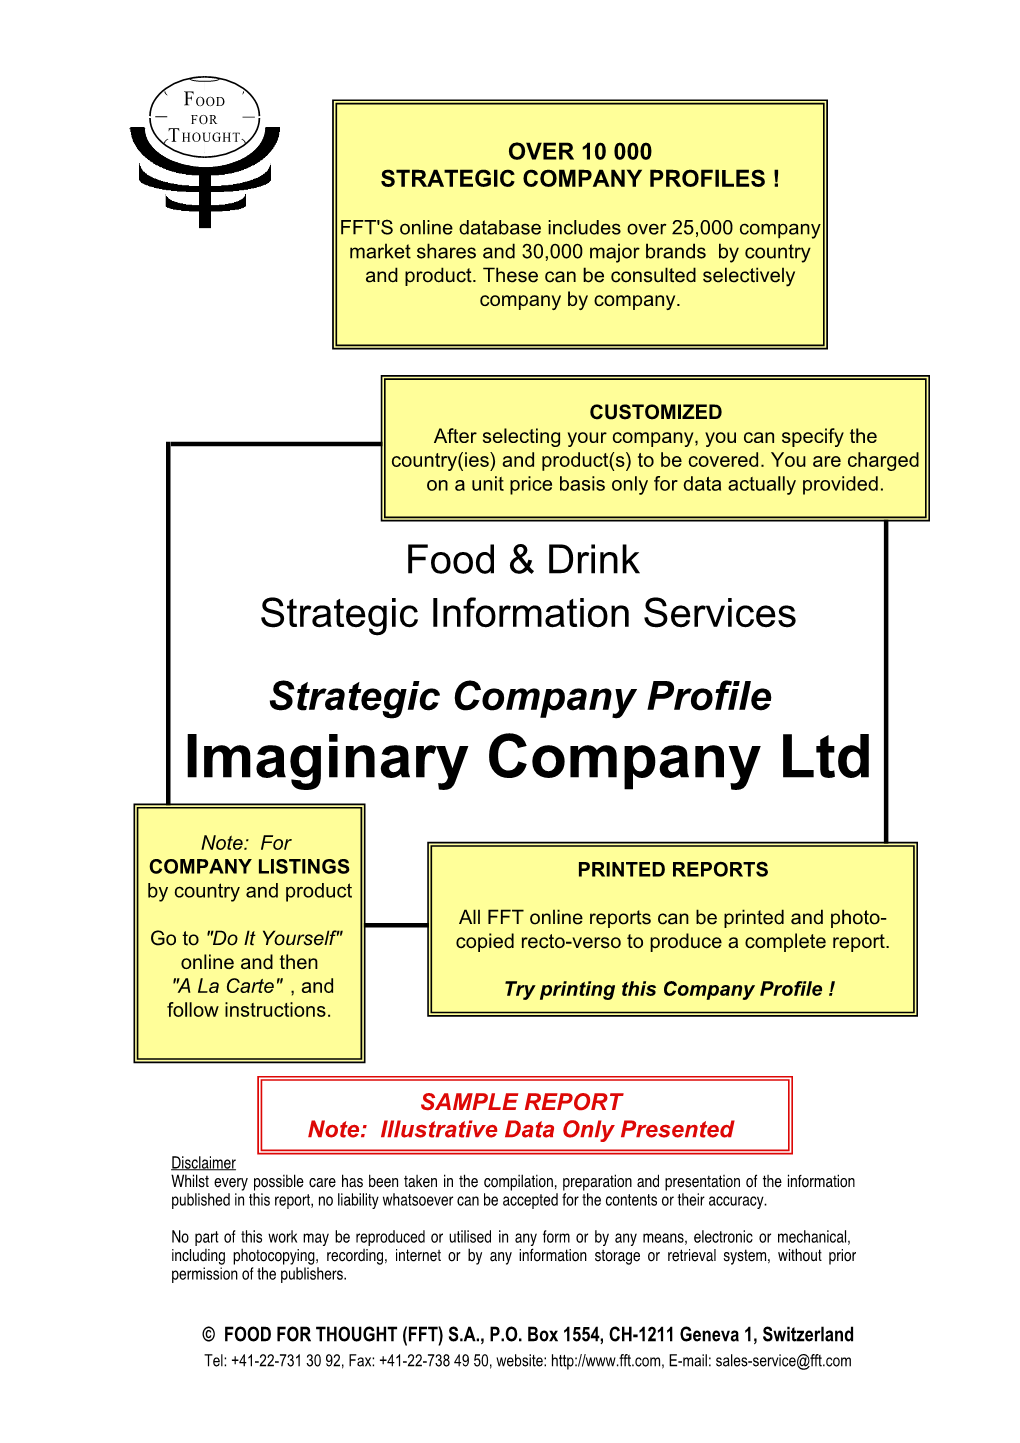 Imaginary Company Ltd